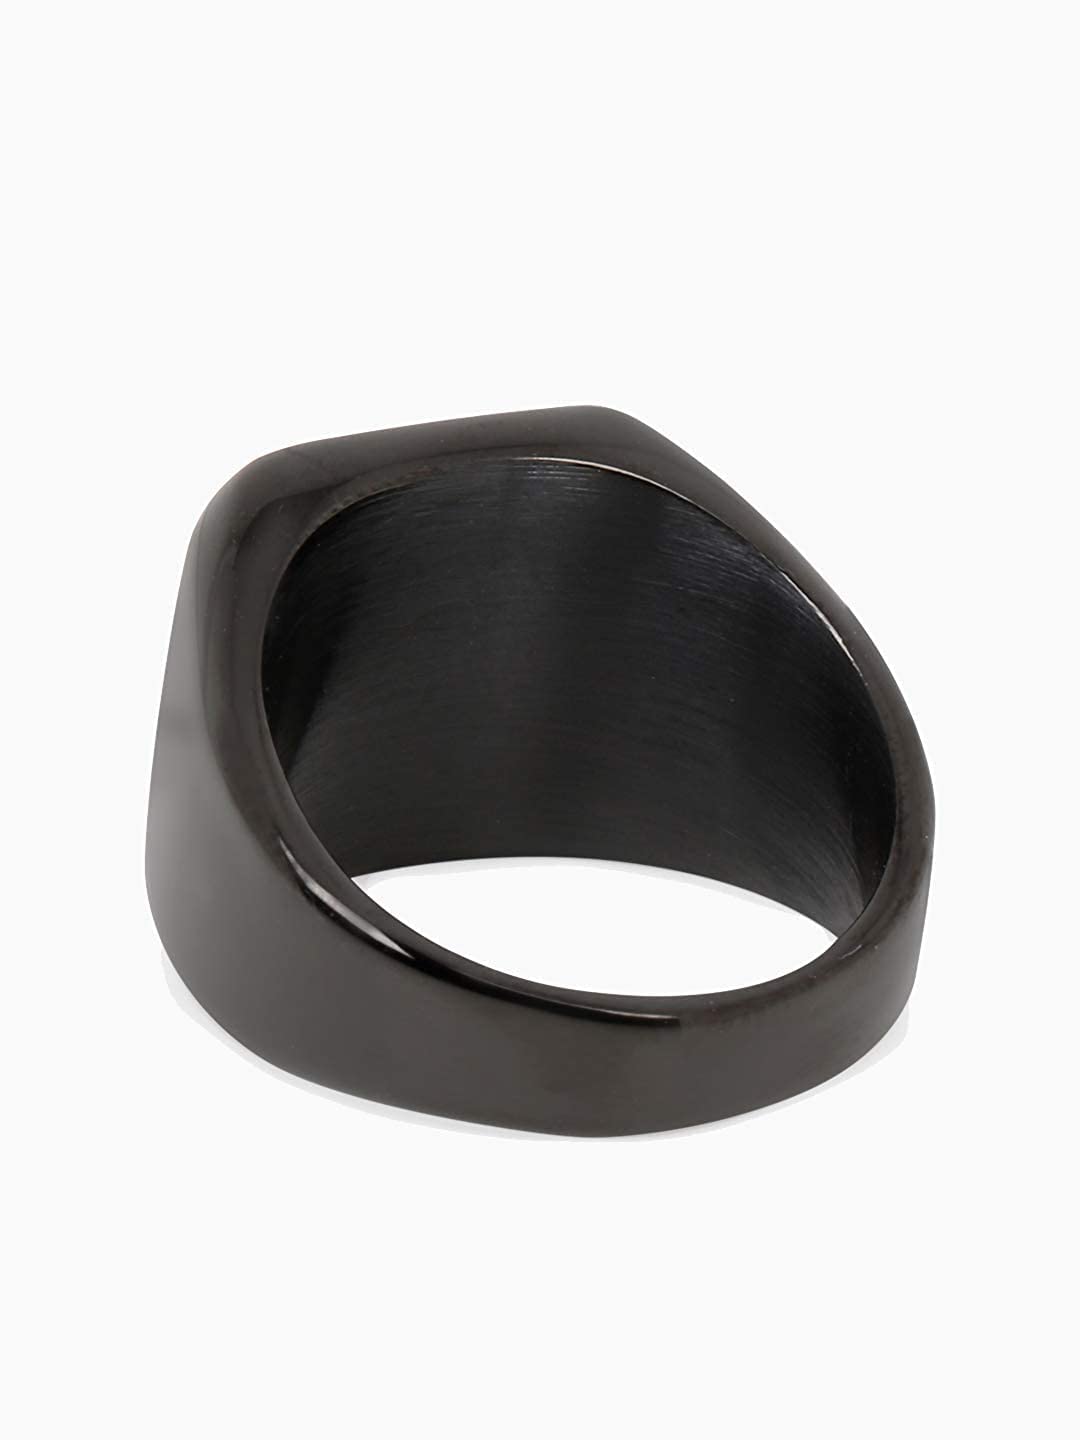 University Trendz Black Fidget Spinner Band Rings for Men & Boys - Cool  Stainless Steel Spinning Ring (